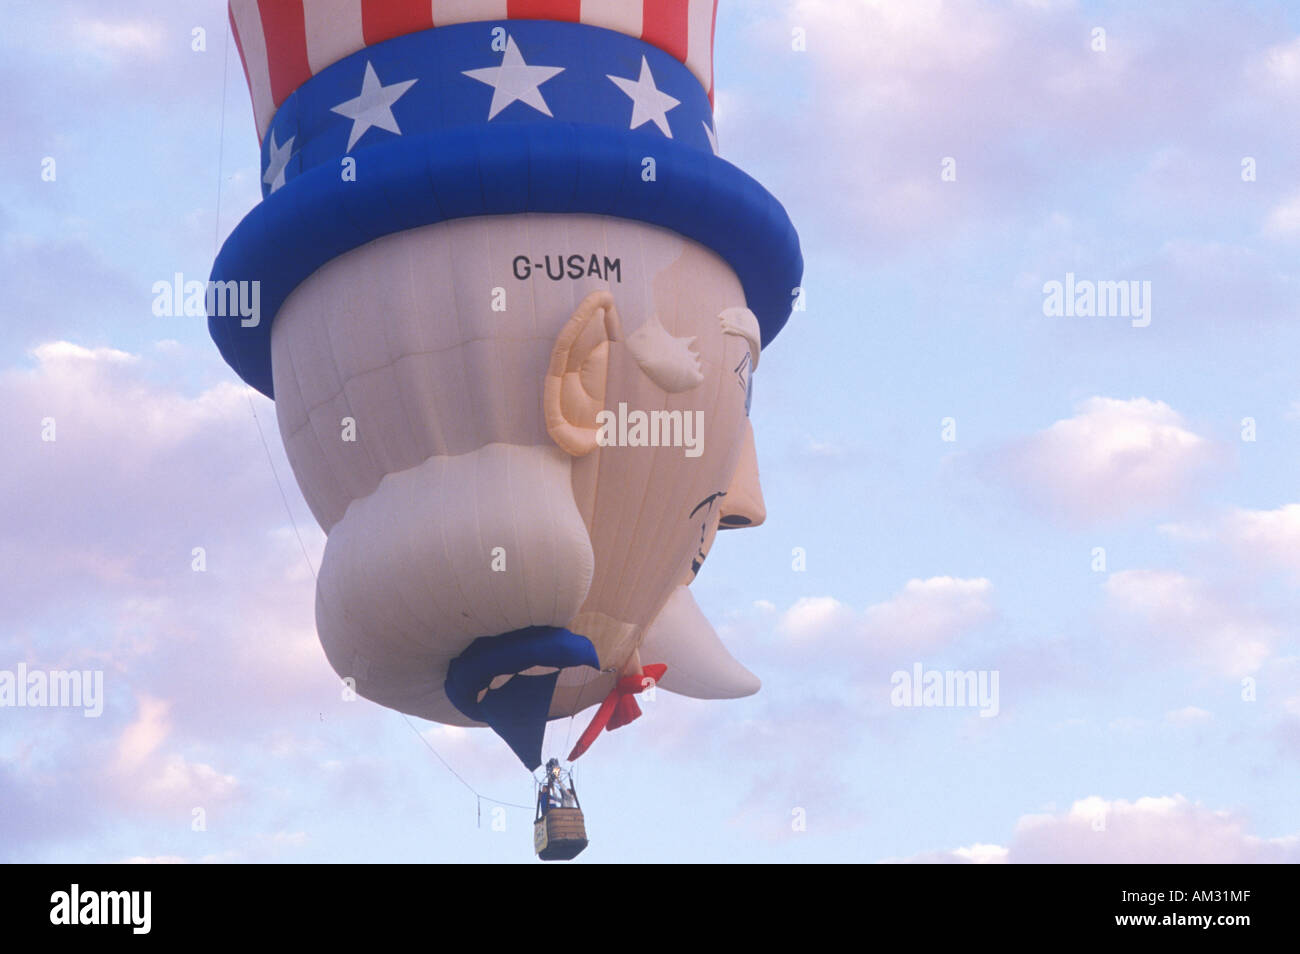 Un globo de aire caliente formado como el Tío Sam en el Albuquerque International Balloon Fiesta de Albuquerque Nuevo México Foto de stock